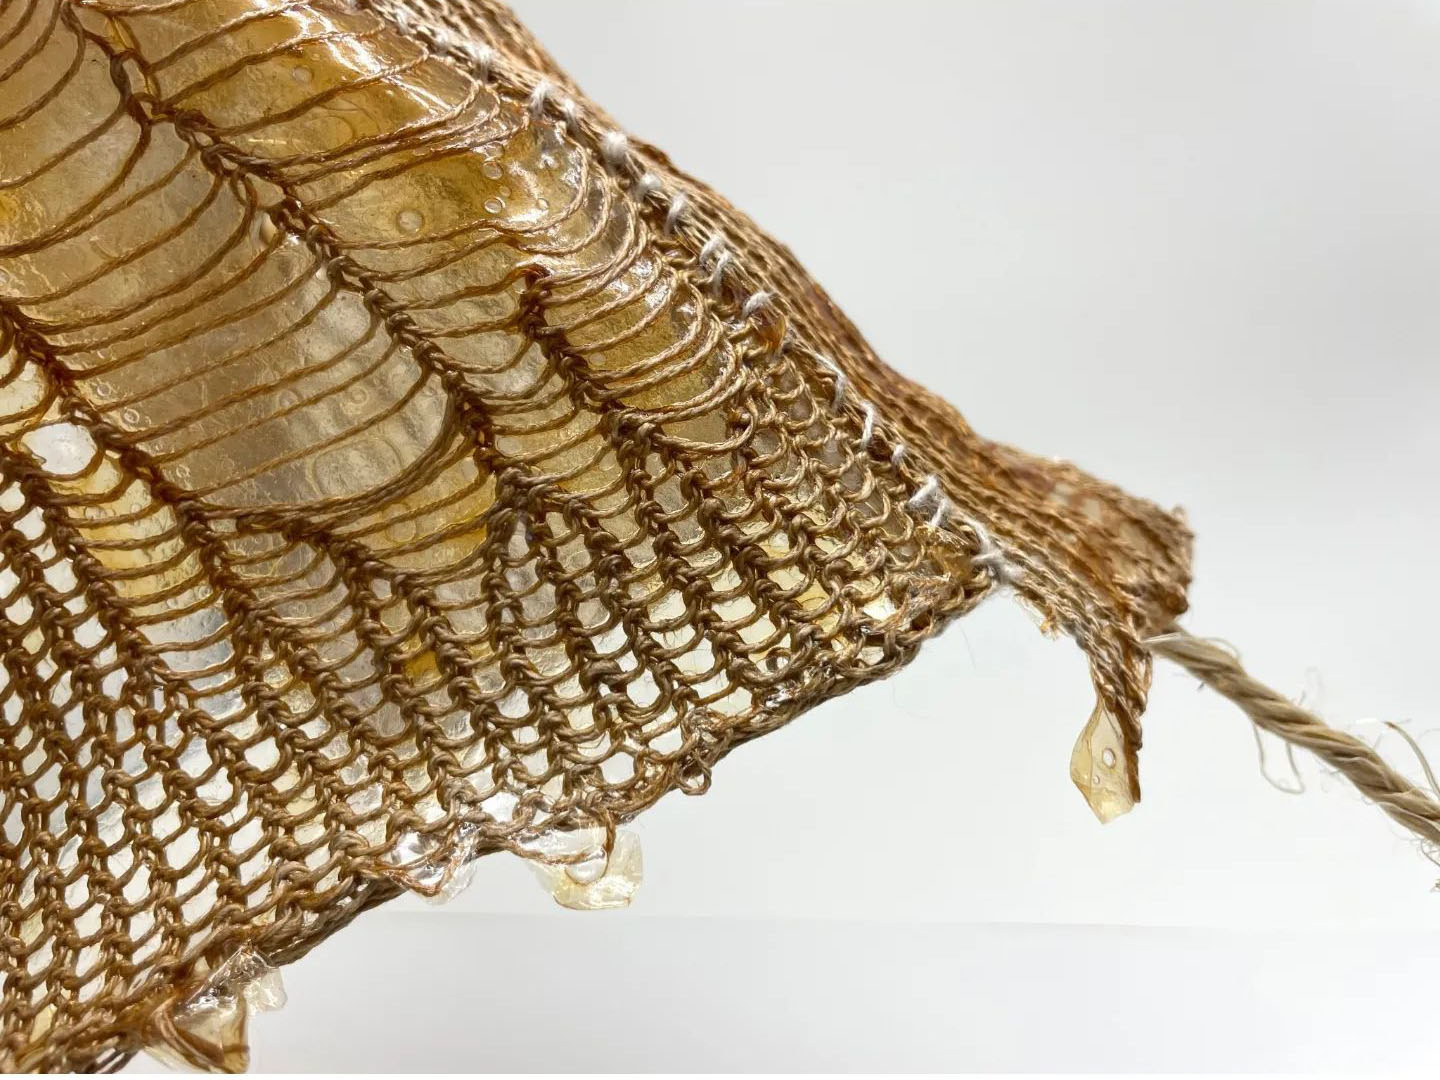 Brown macroalgae prototype, by Anna-Lena Mueller